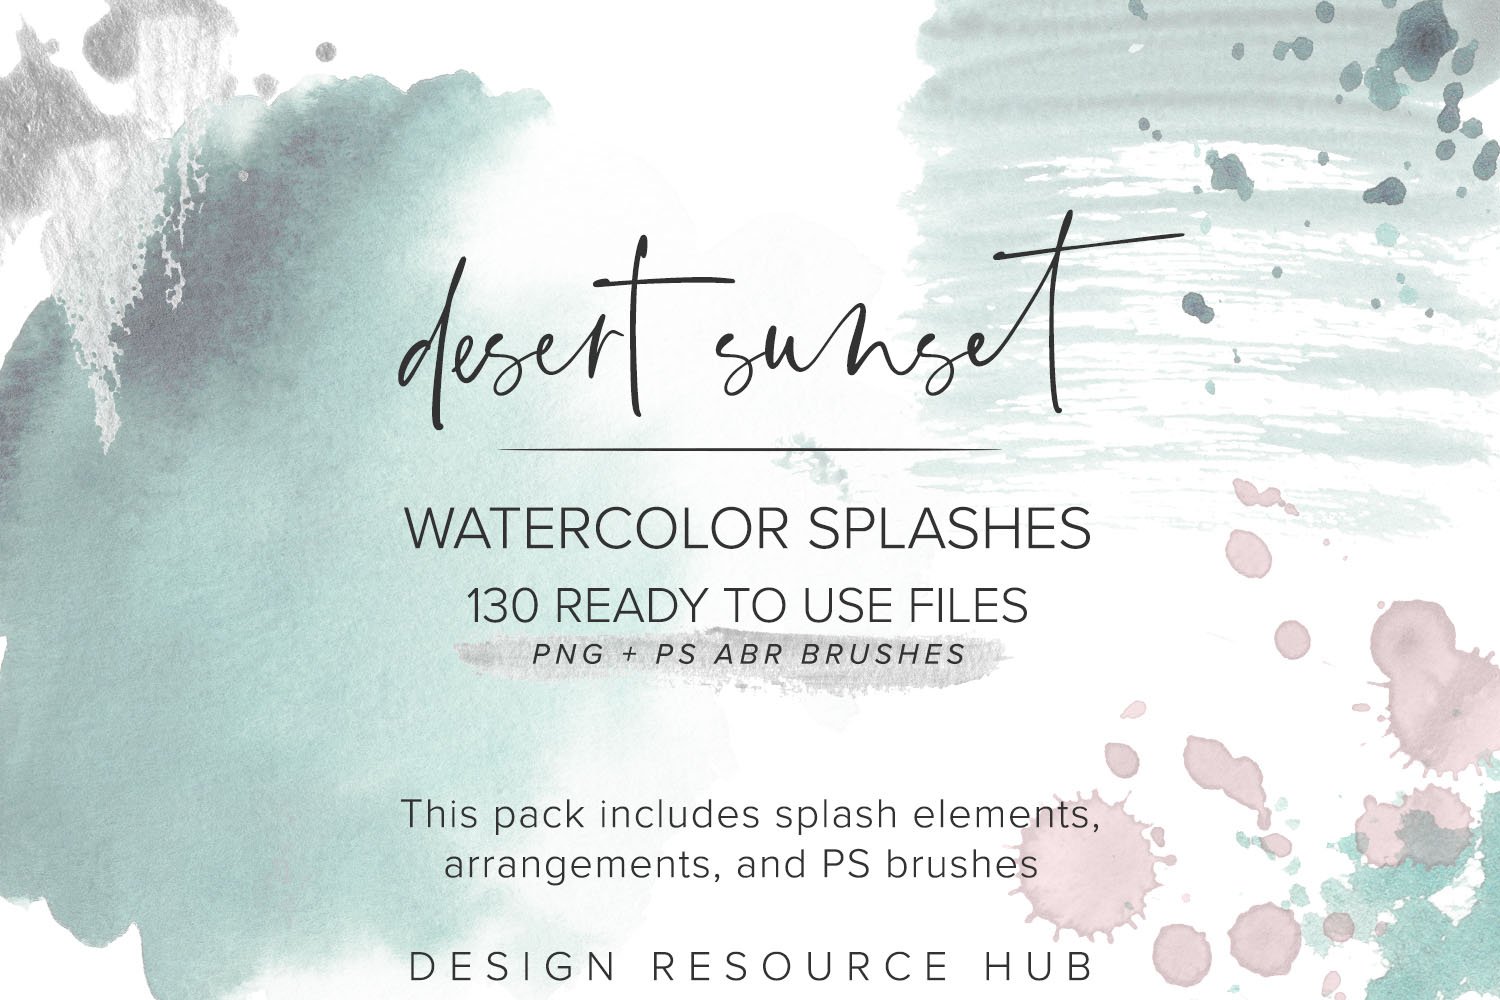 Desert Sunset Watercolor Splashes cover image.